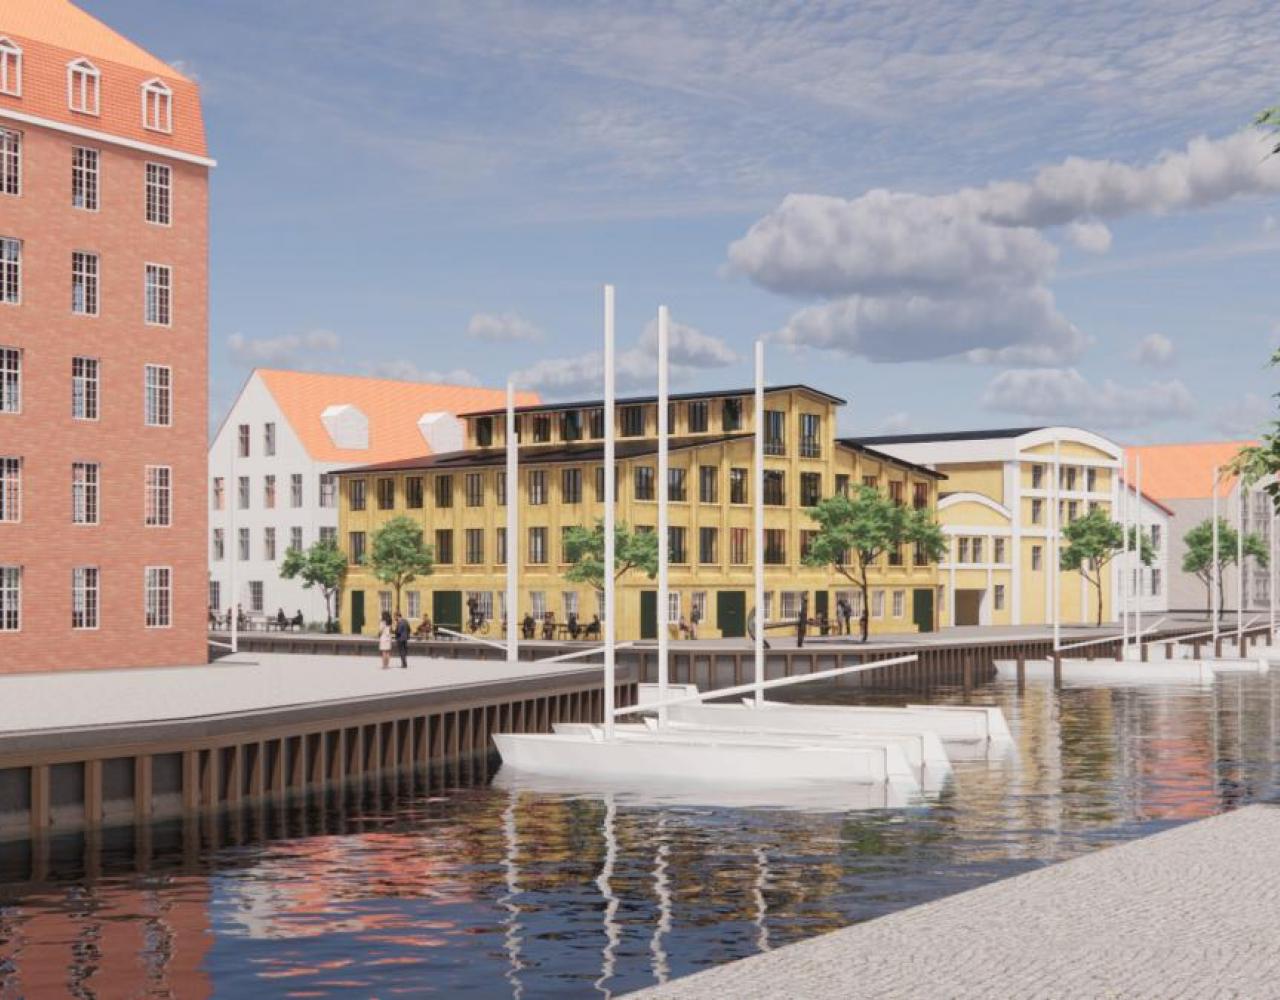 Christianshavn, kanal, wilders plads